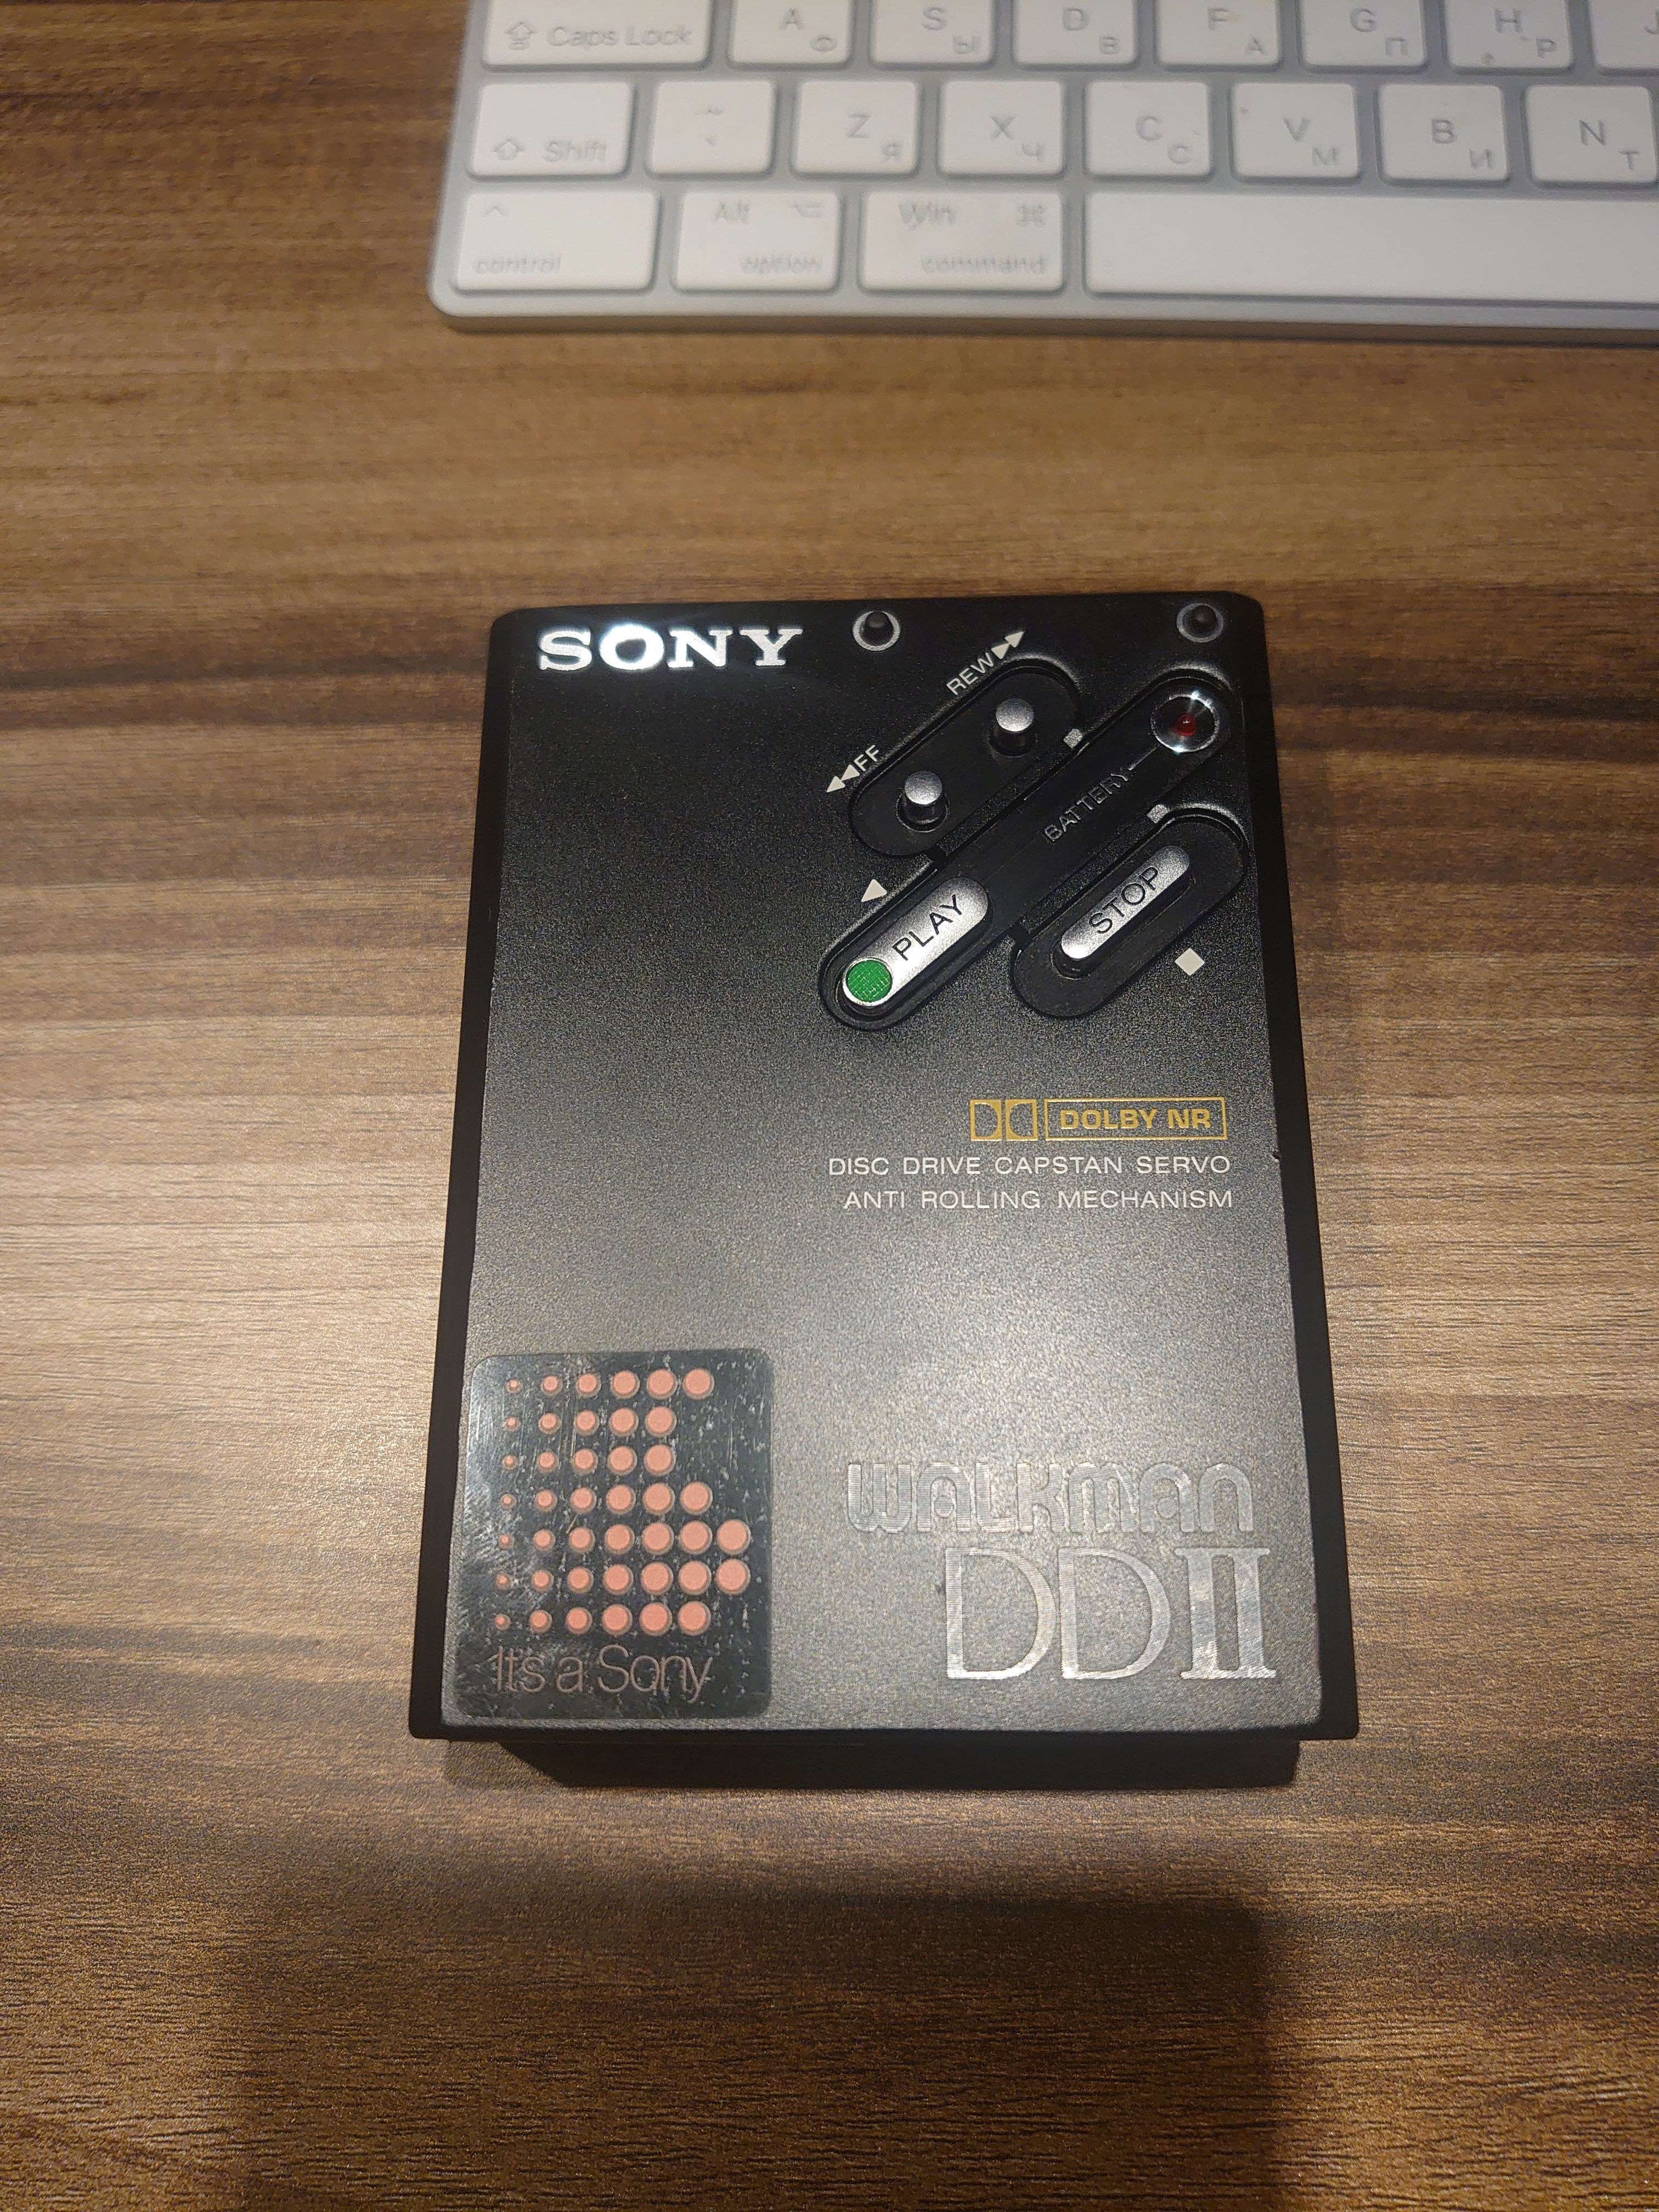 Sony Walkman WM-DD2 Cassette Player EXCELLENT WORK Black – GRA & AFCH